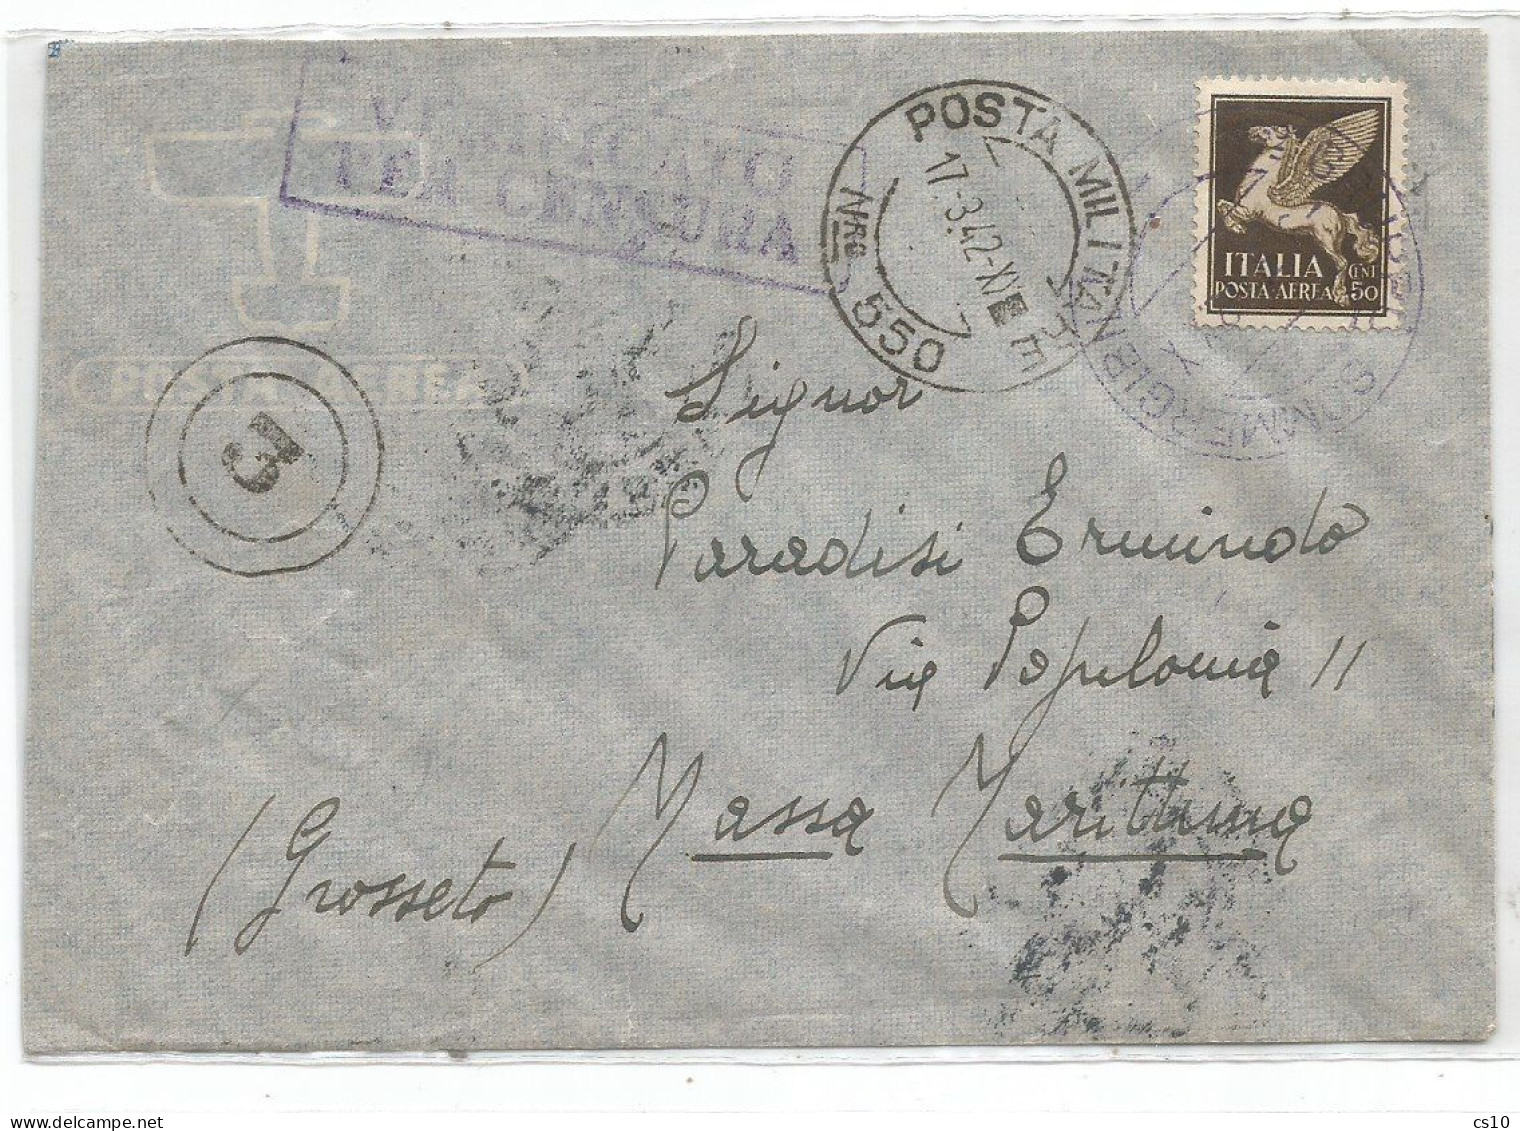 WW2 Basi Sommergibili Italiane Submarine Bases U-Boot #2 Documenti Postali Con CENSURA 1941/42 - Colecciones